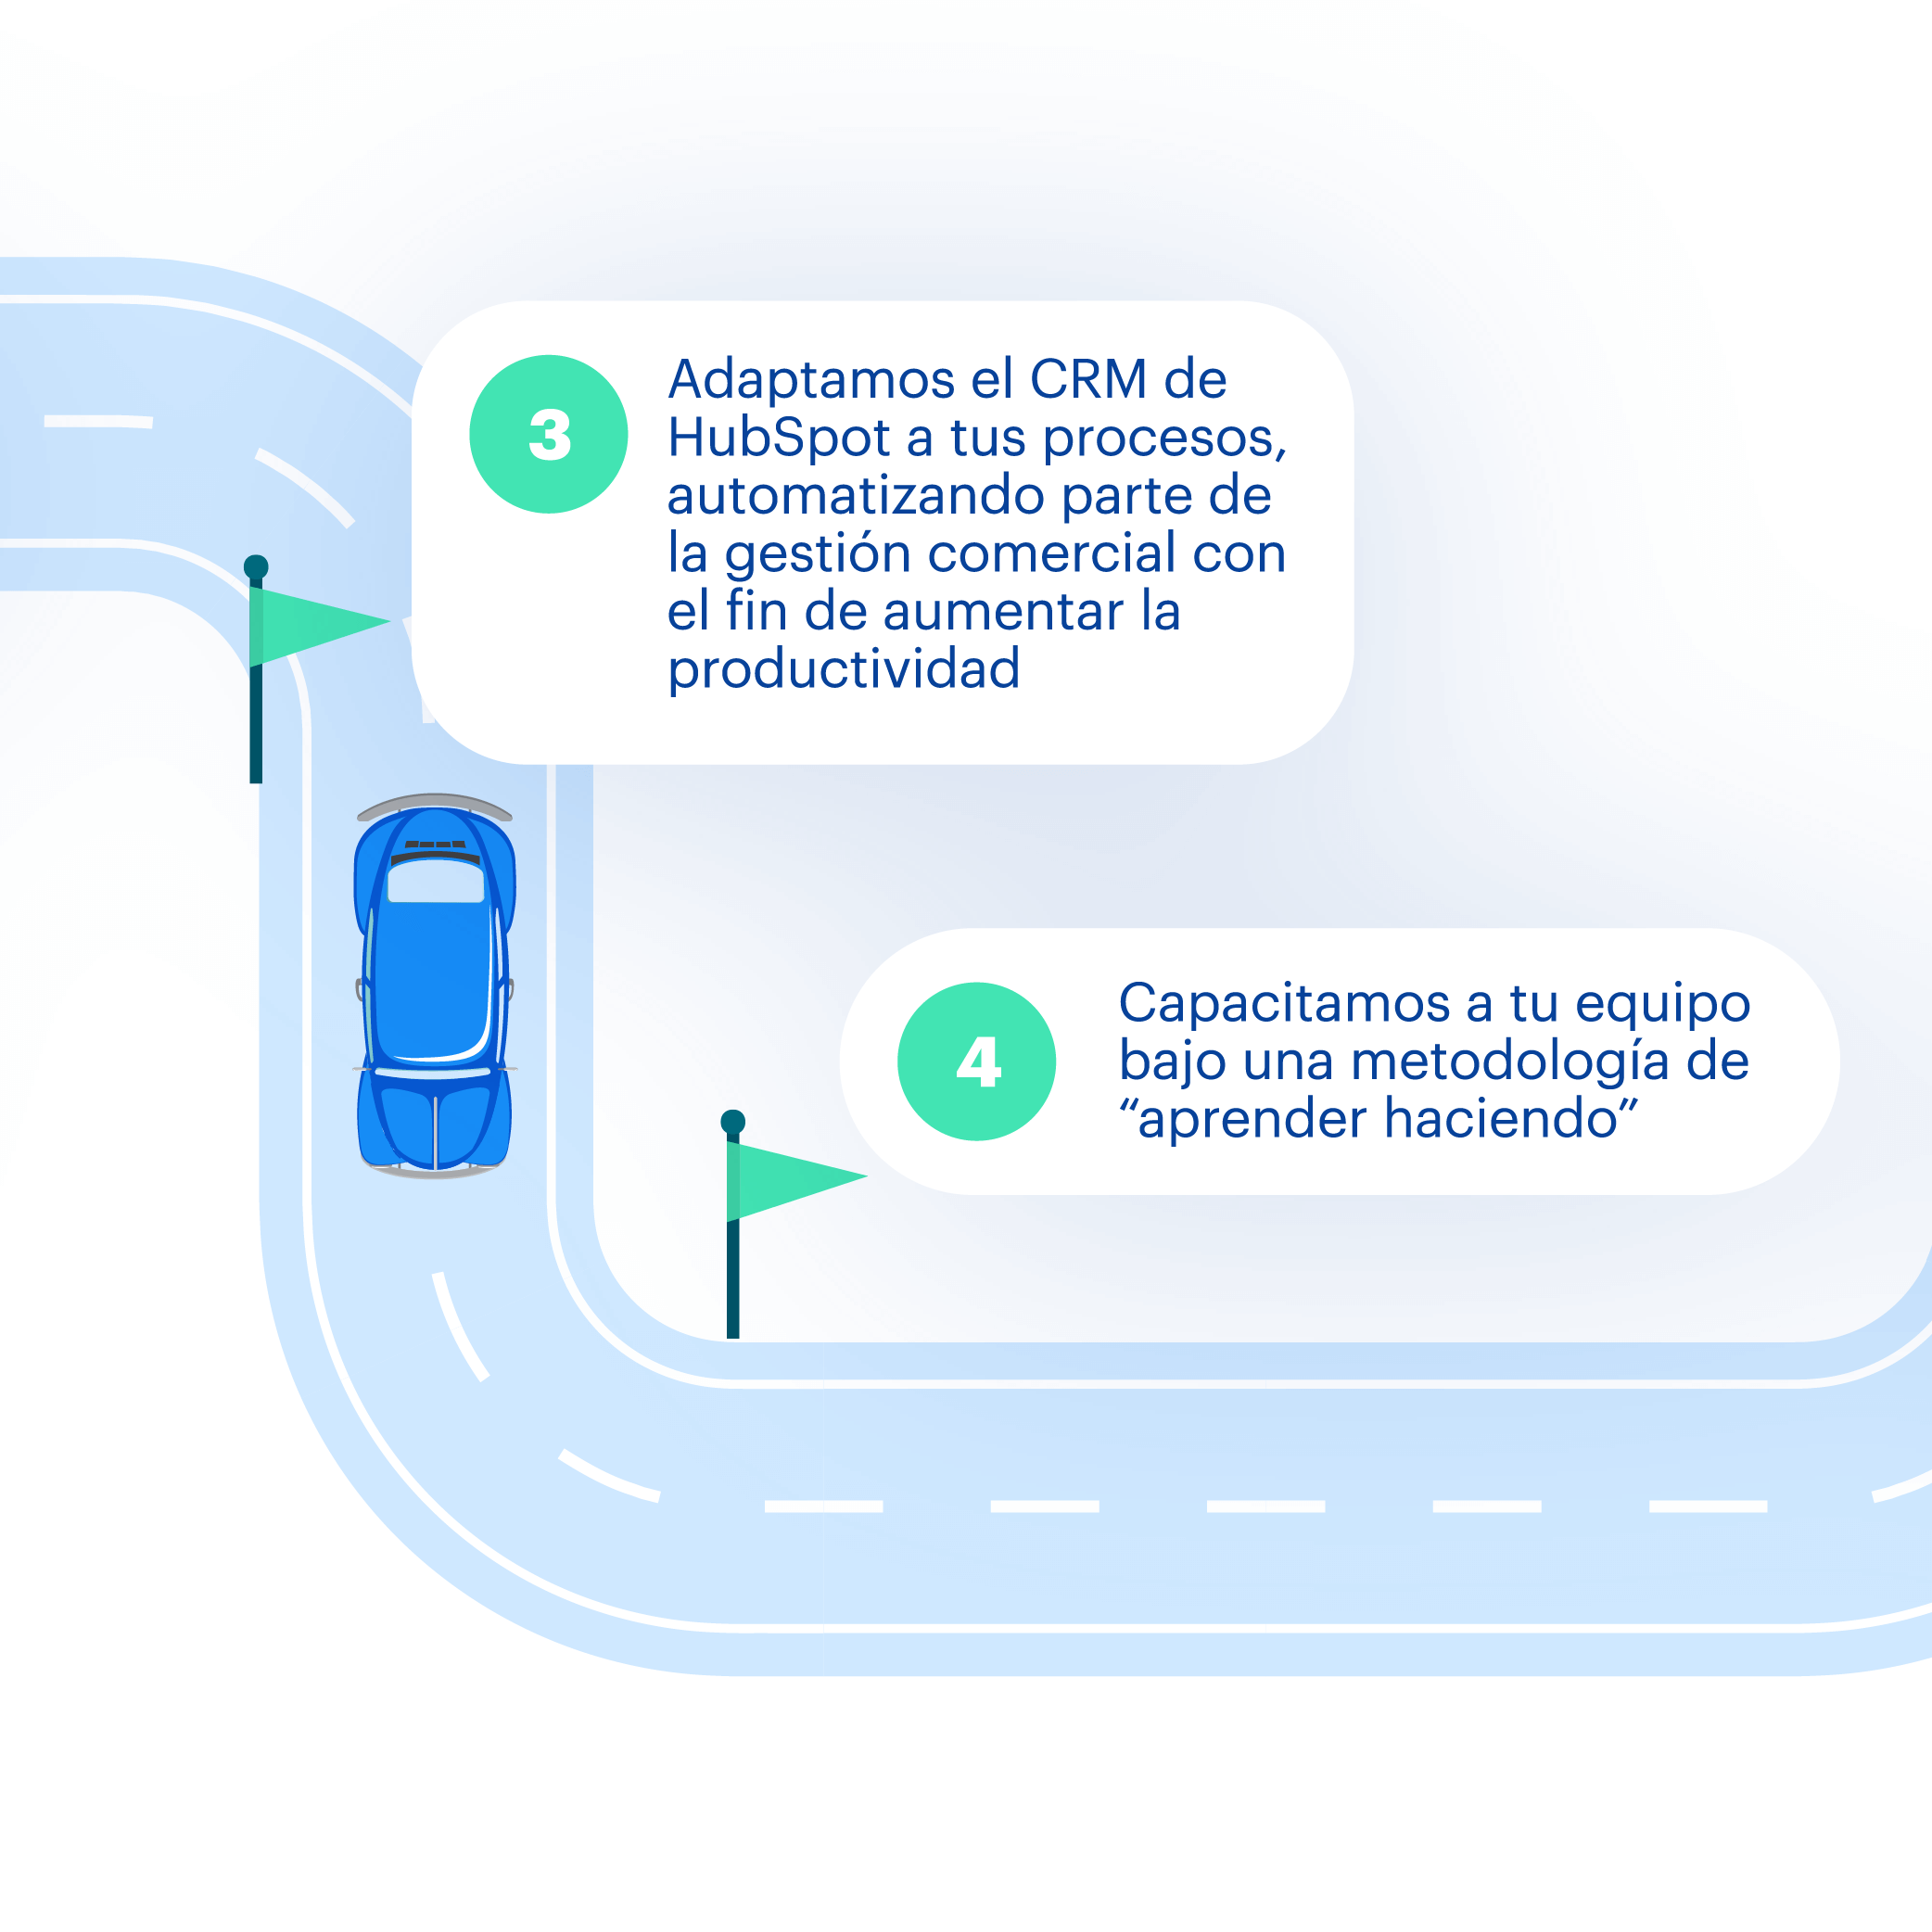 Carretera-infografia-02.png